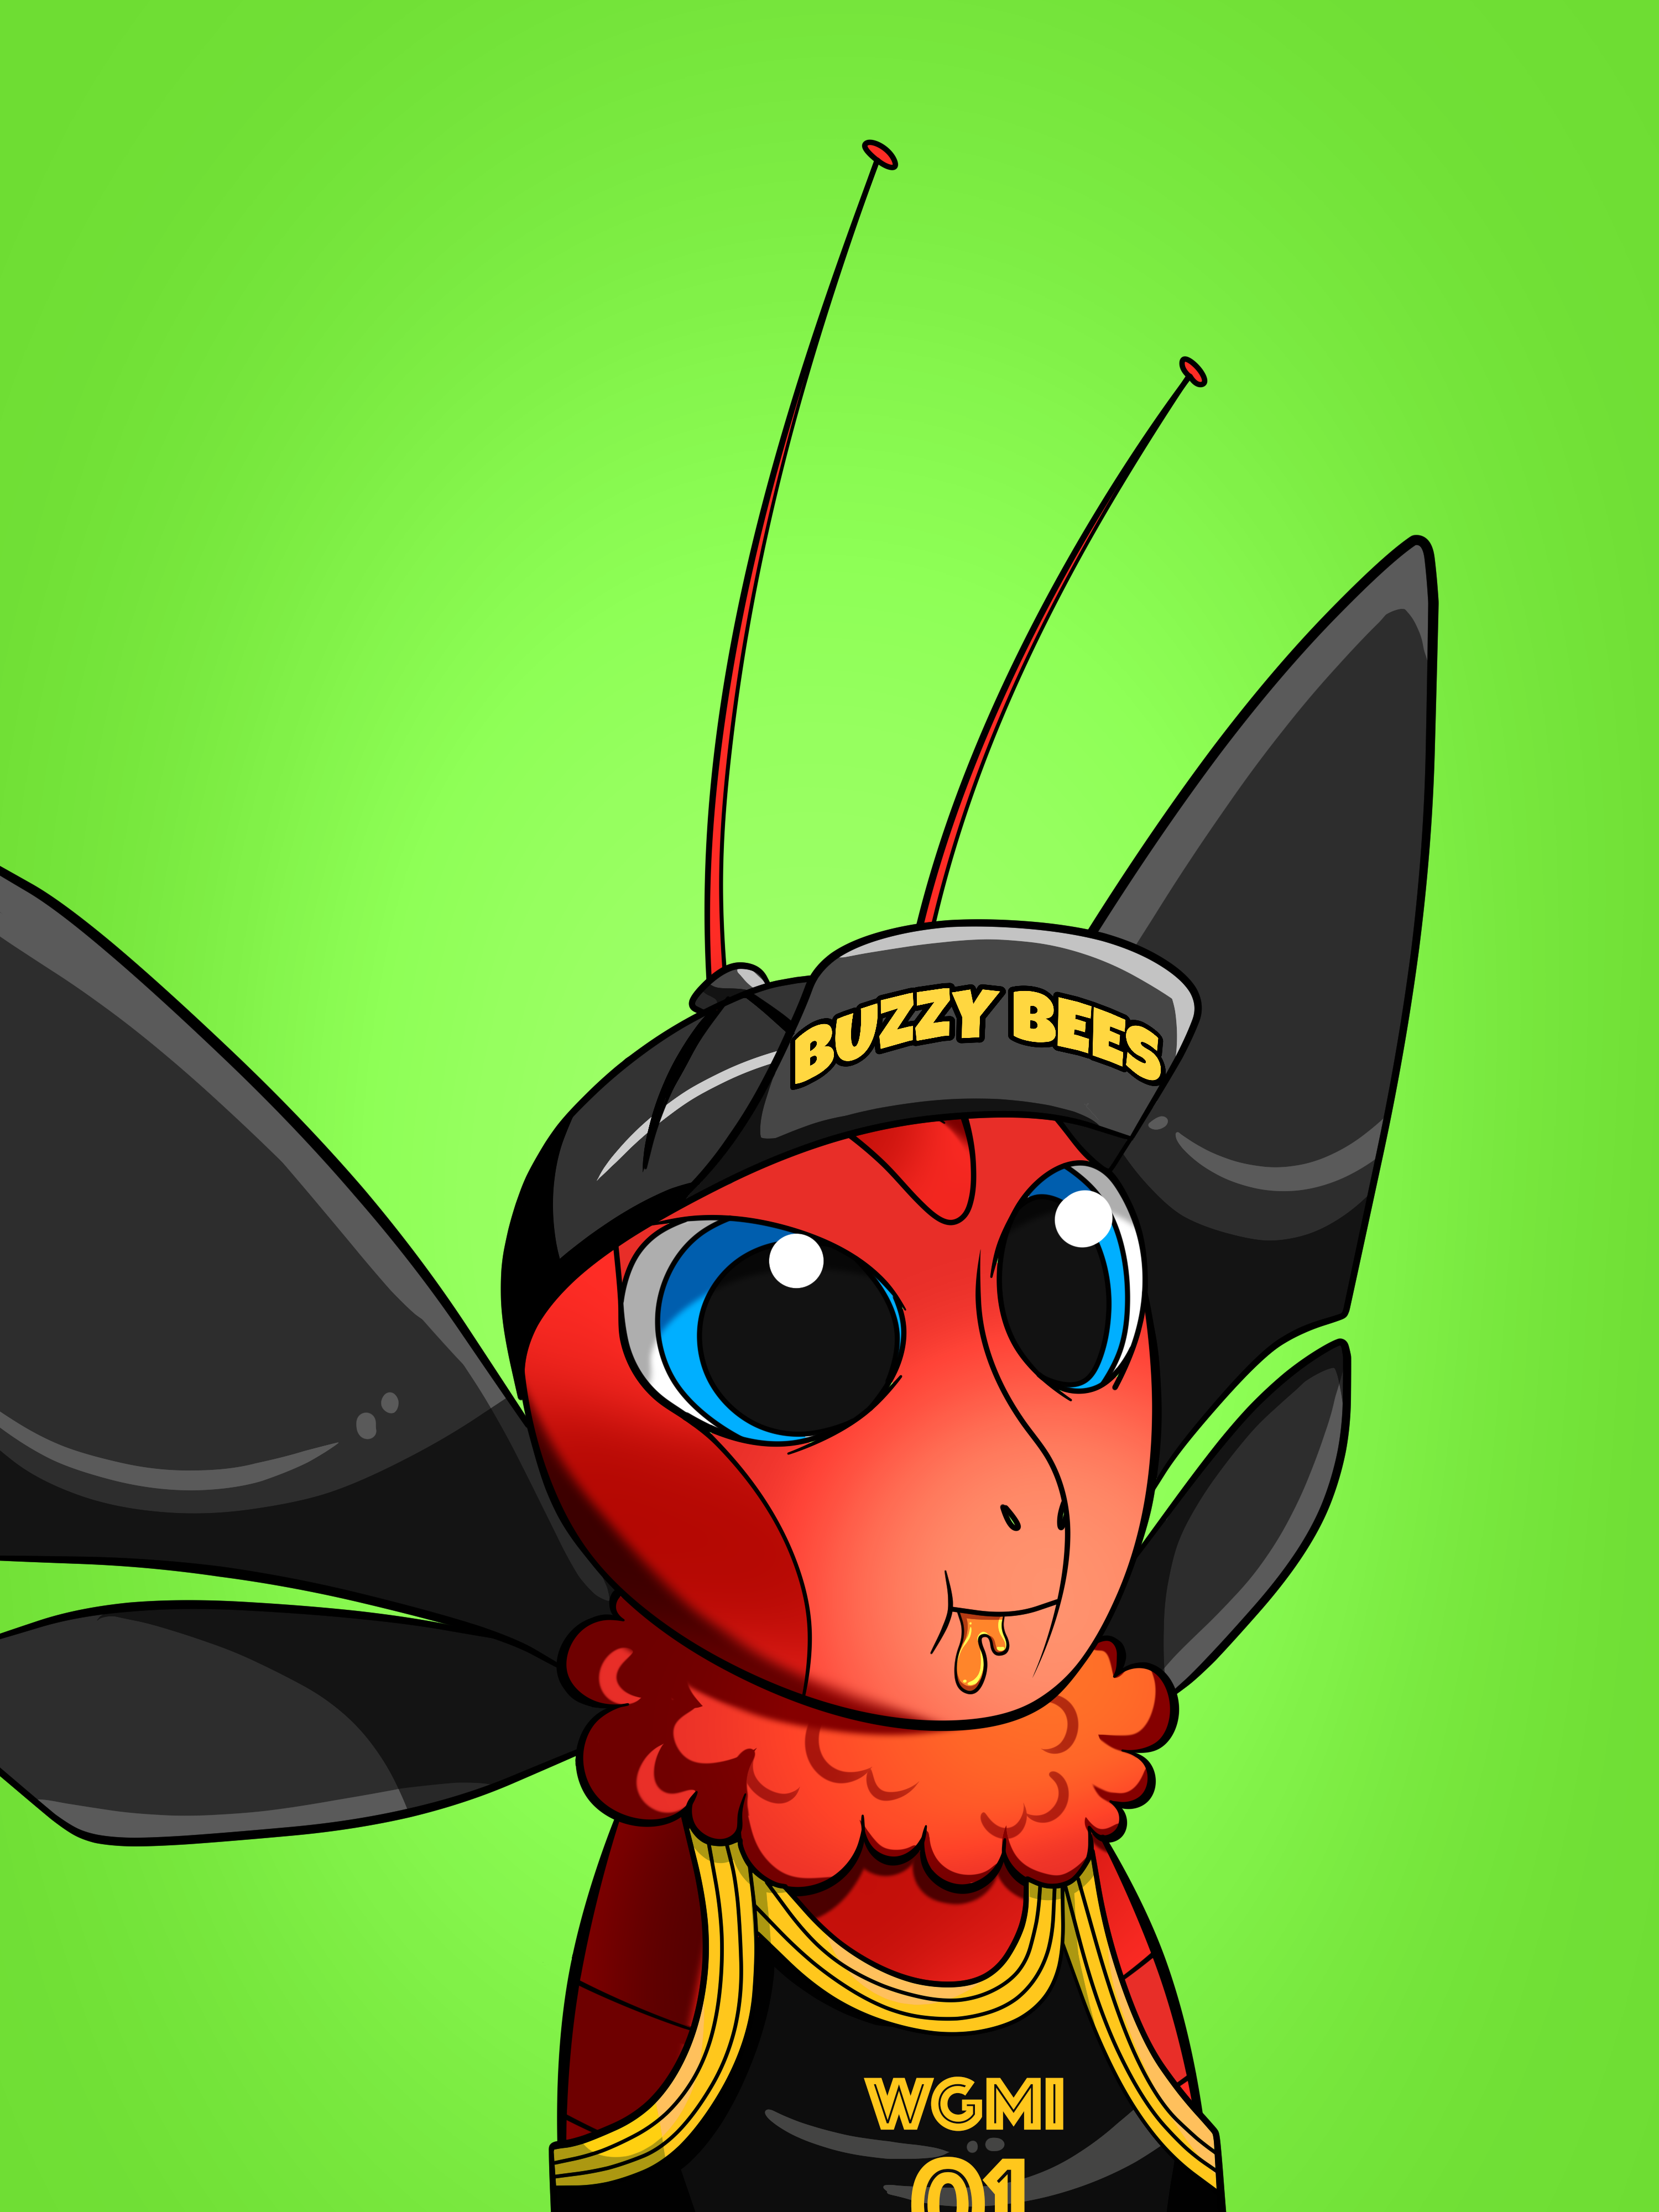 Buzzy Bees 99